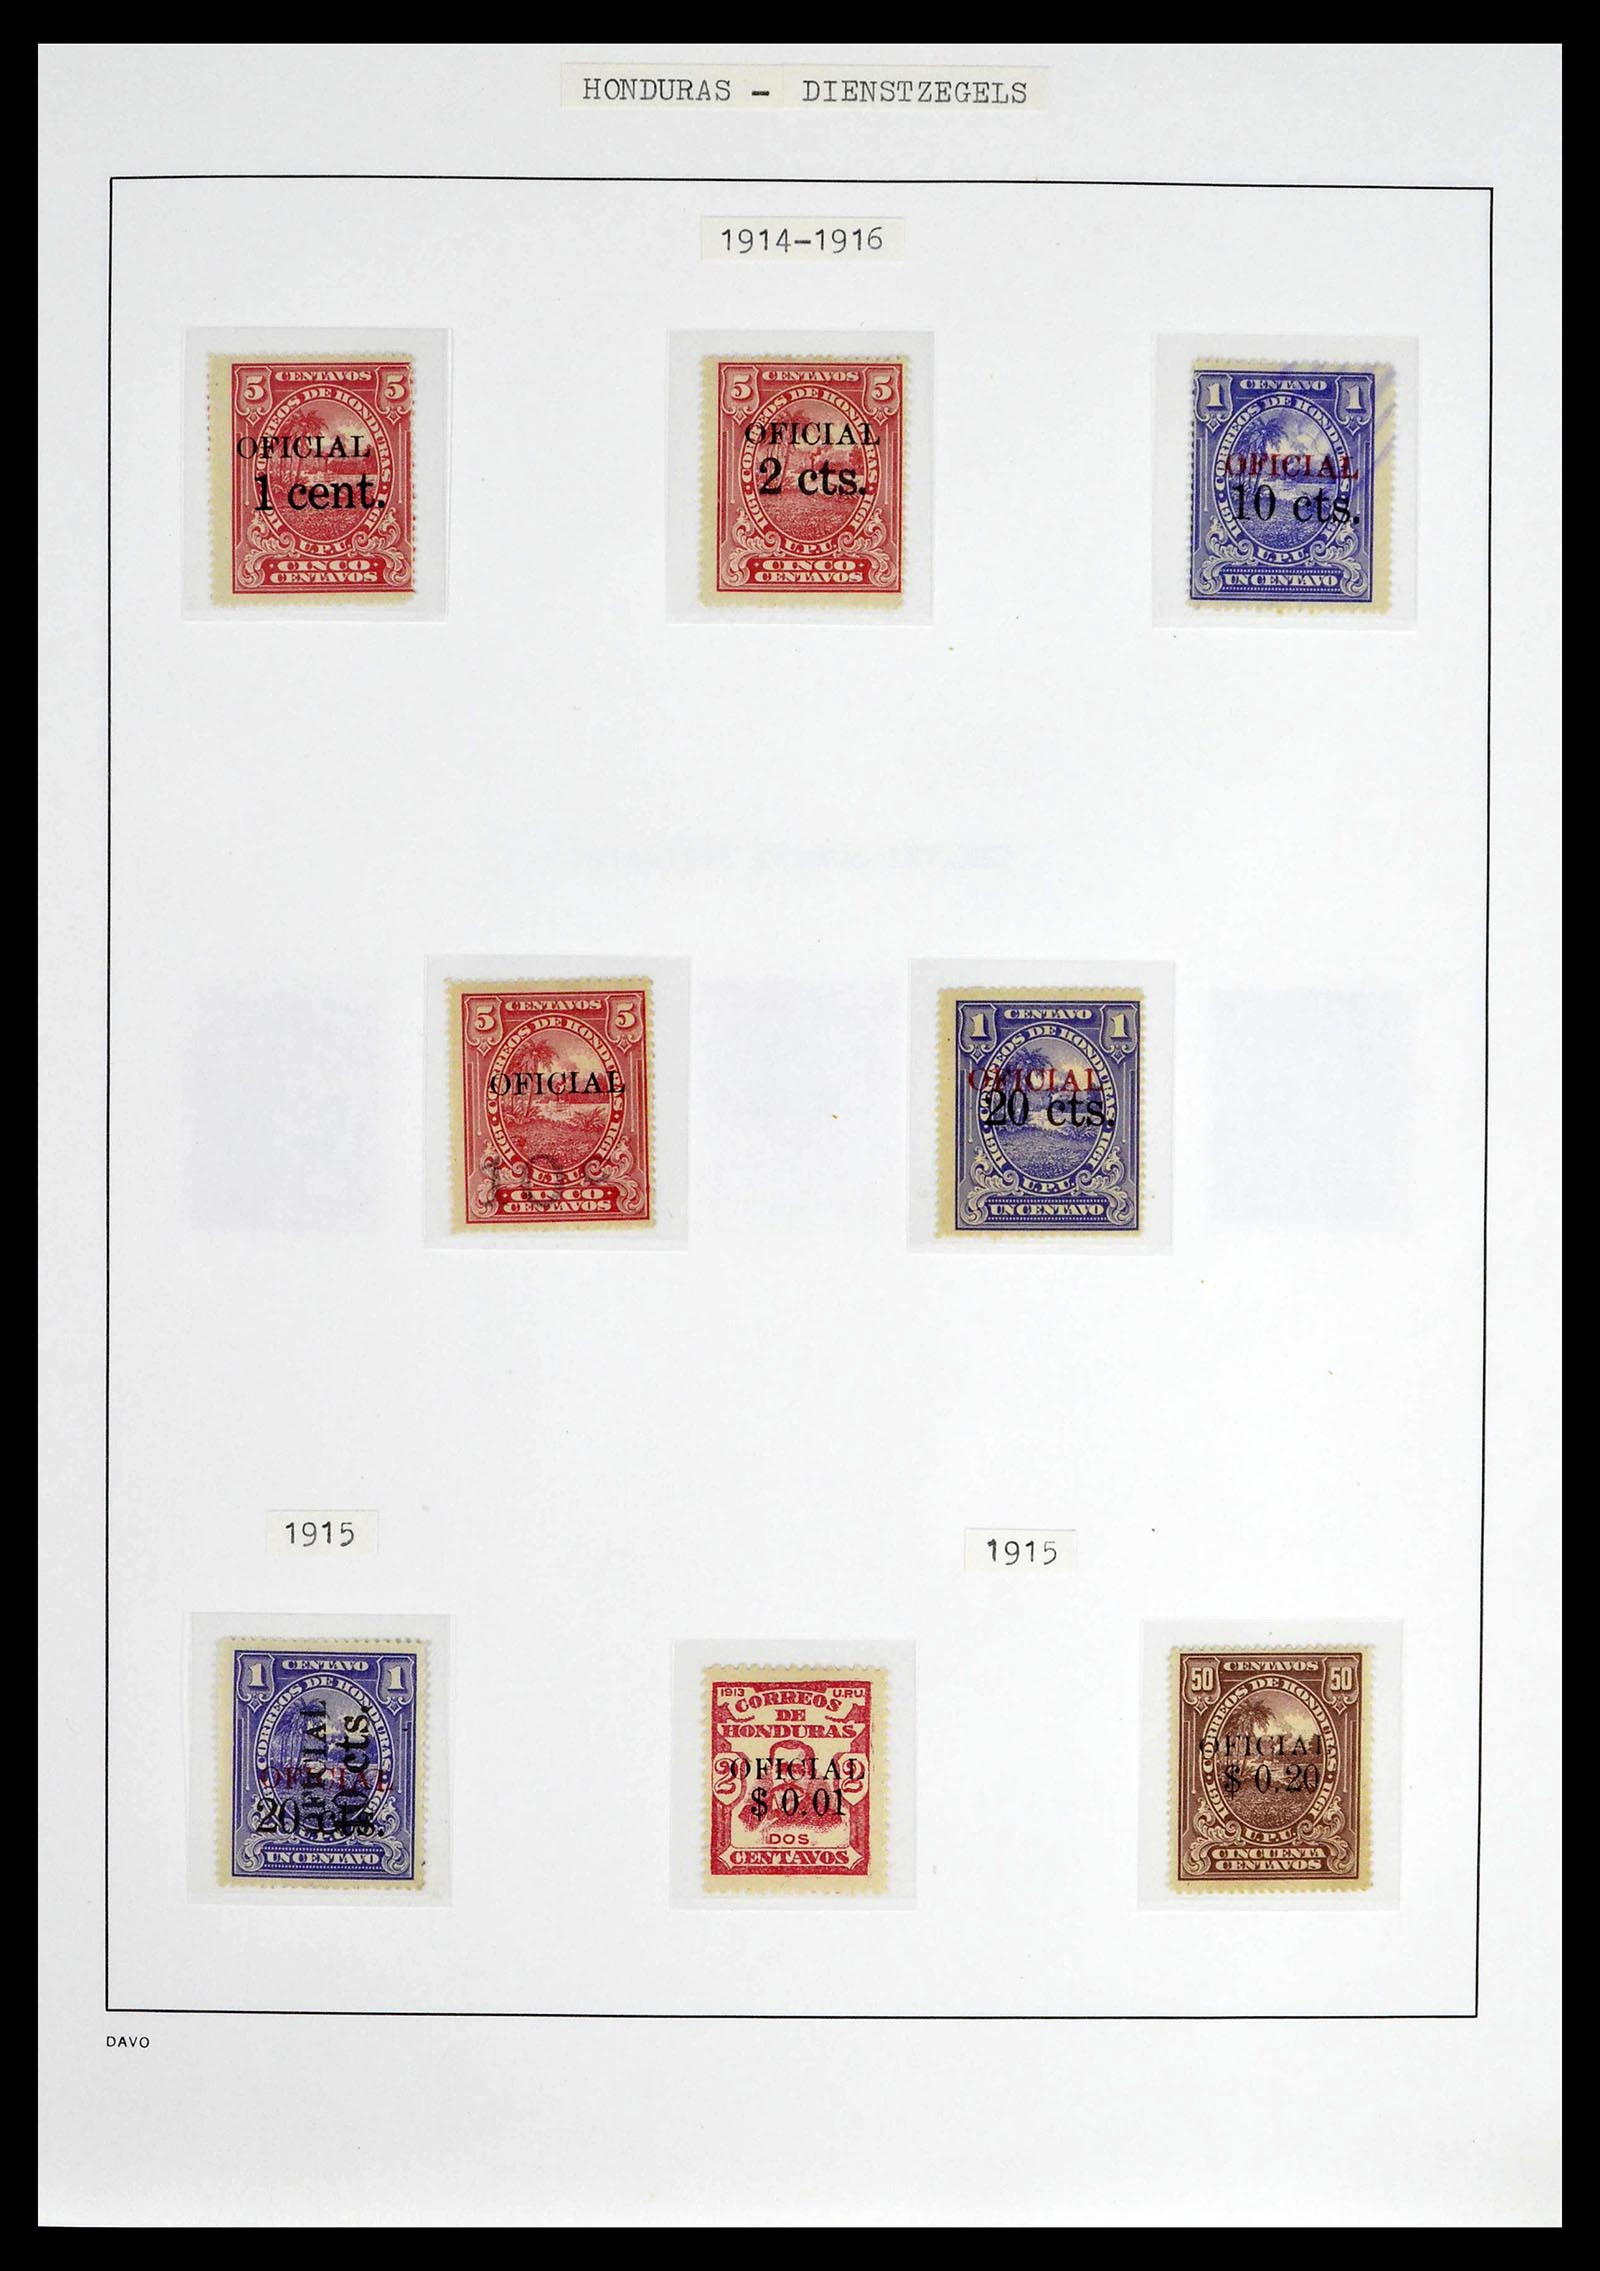 39404 0013 - Postzegelverzameling 39404 Honduras dienstzegels 1890-1974.